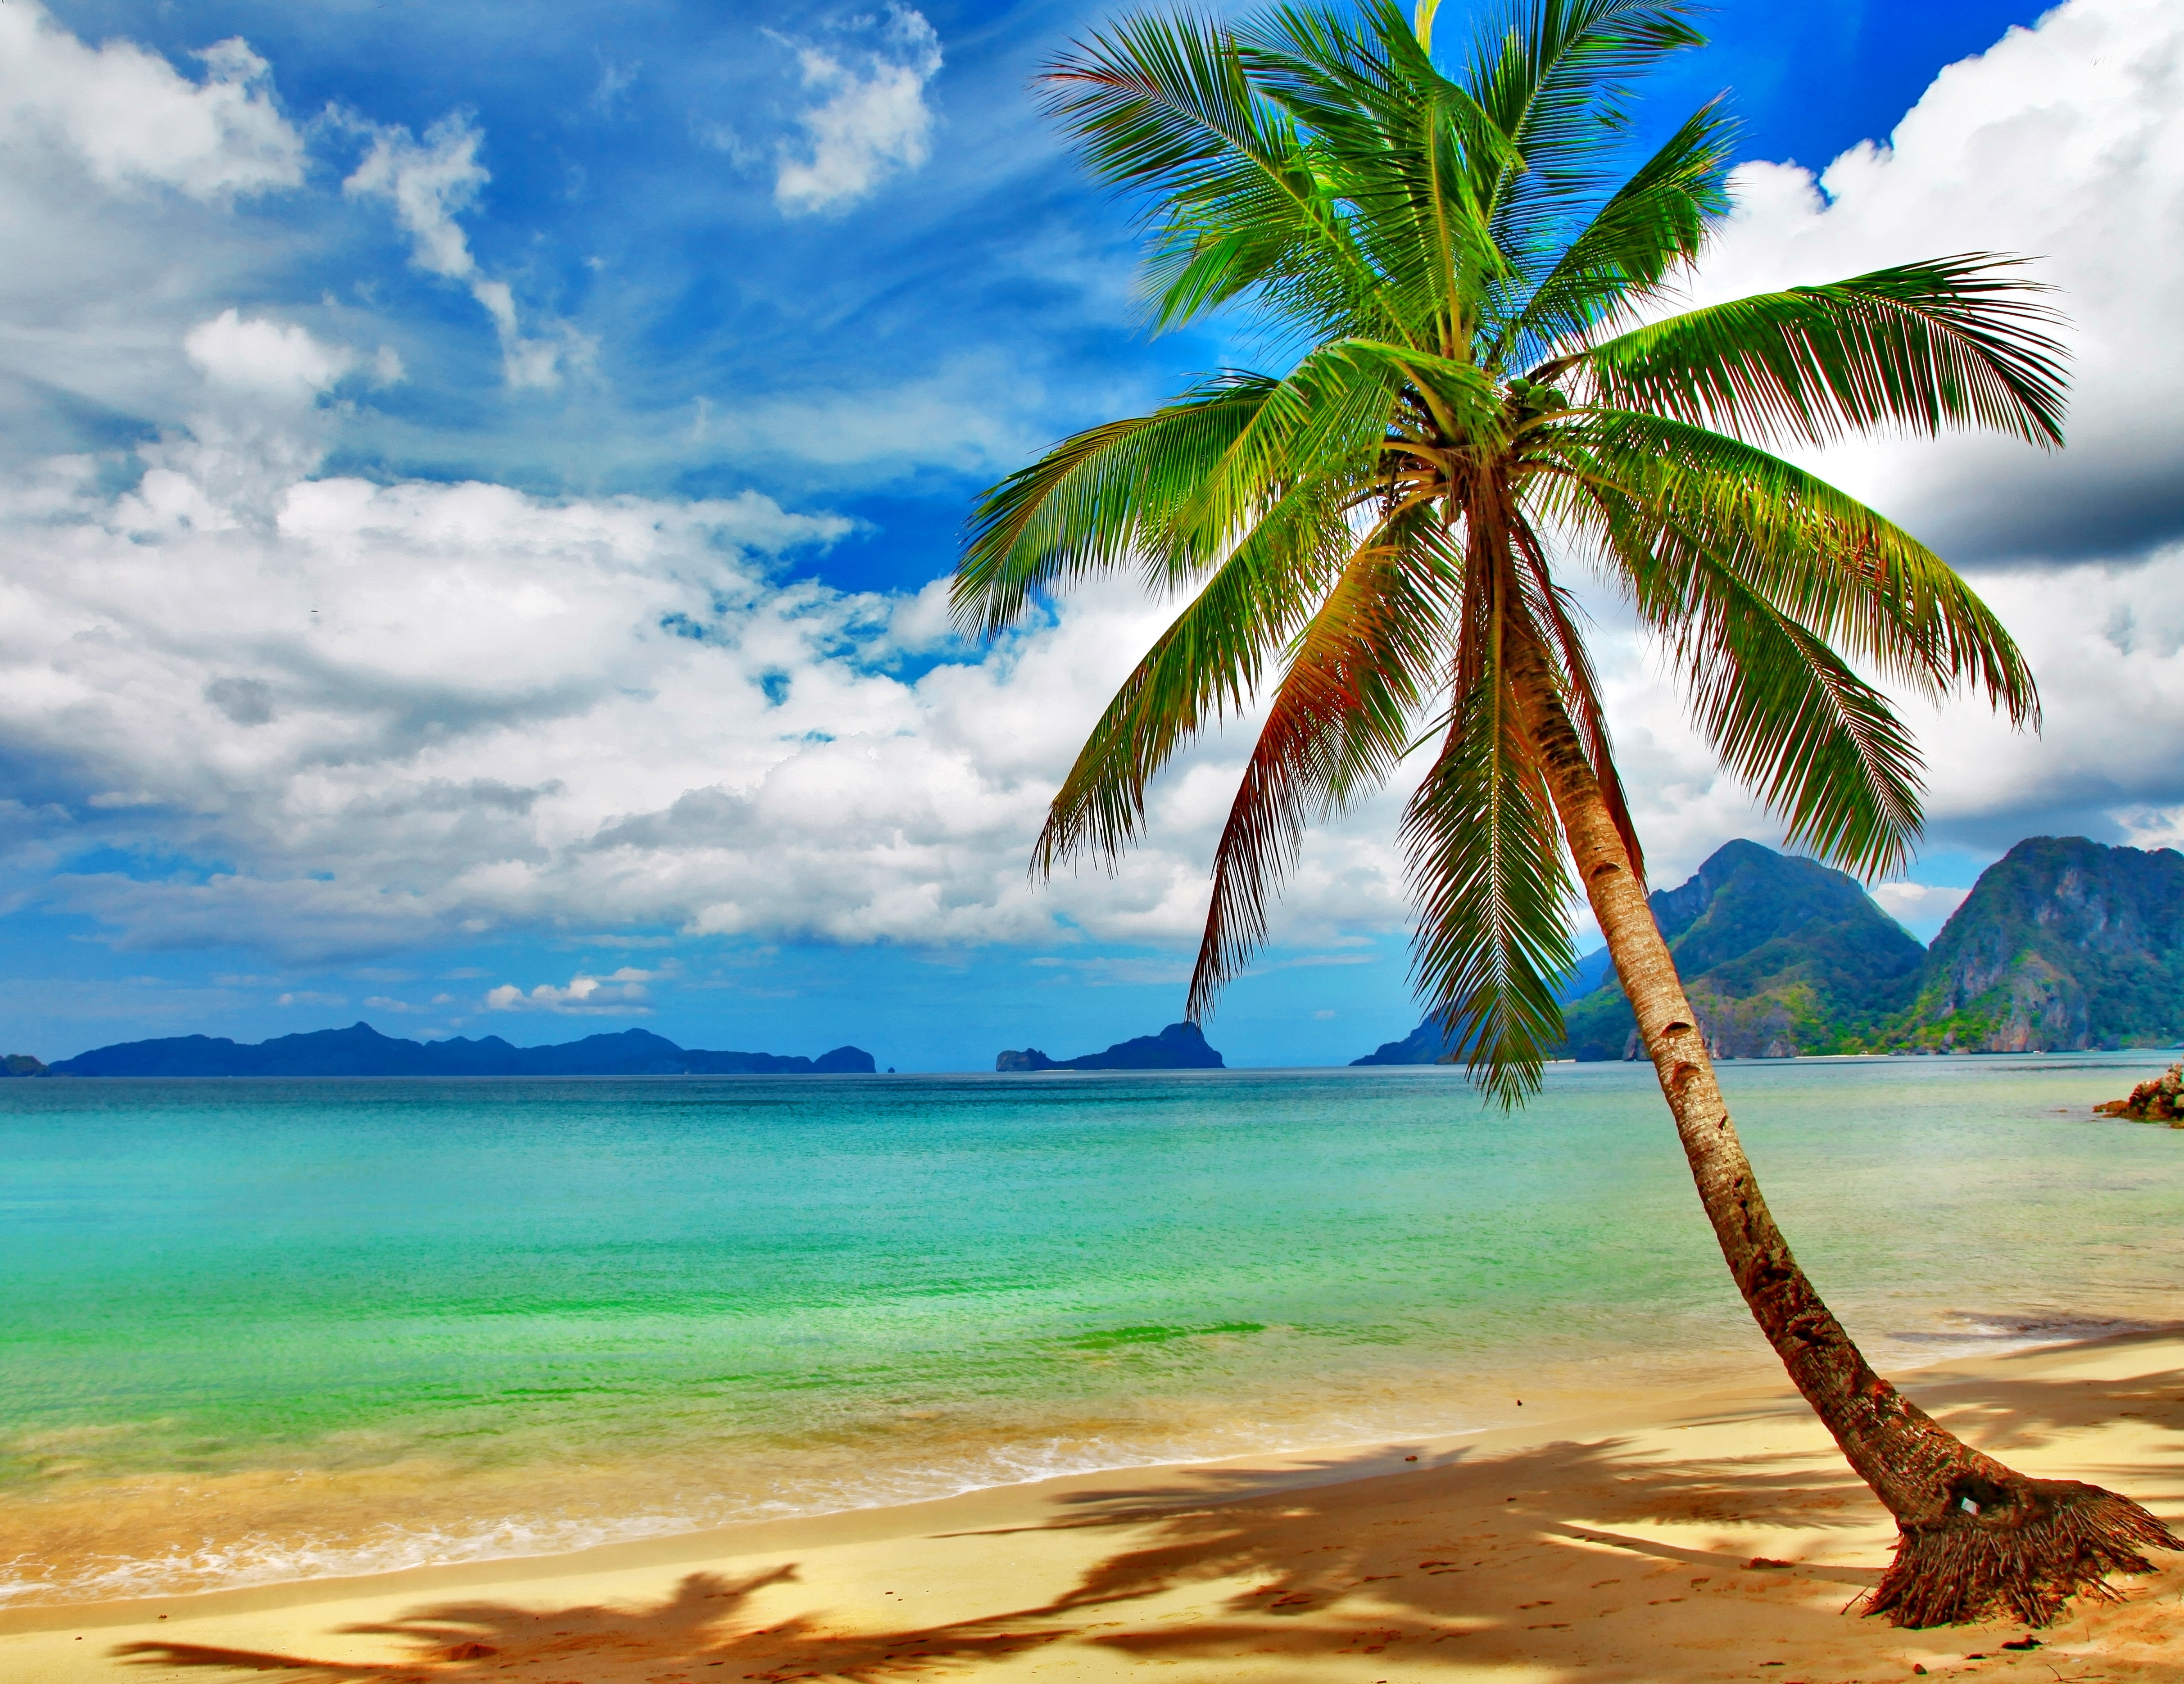 Tropical paradise beach coast sea blue emerald ocean palm